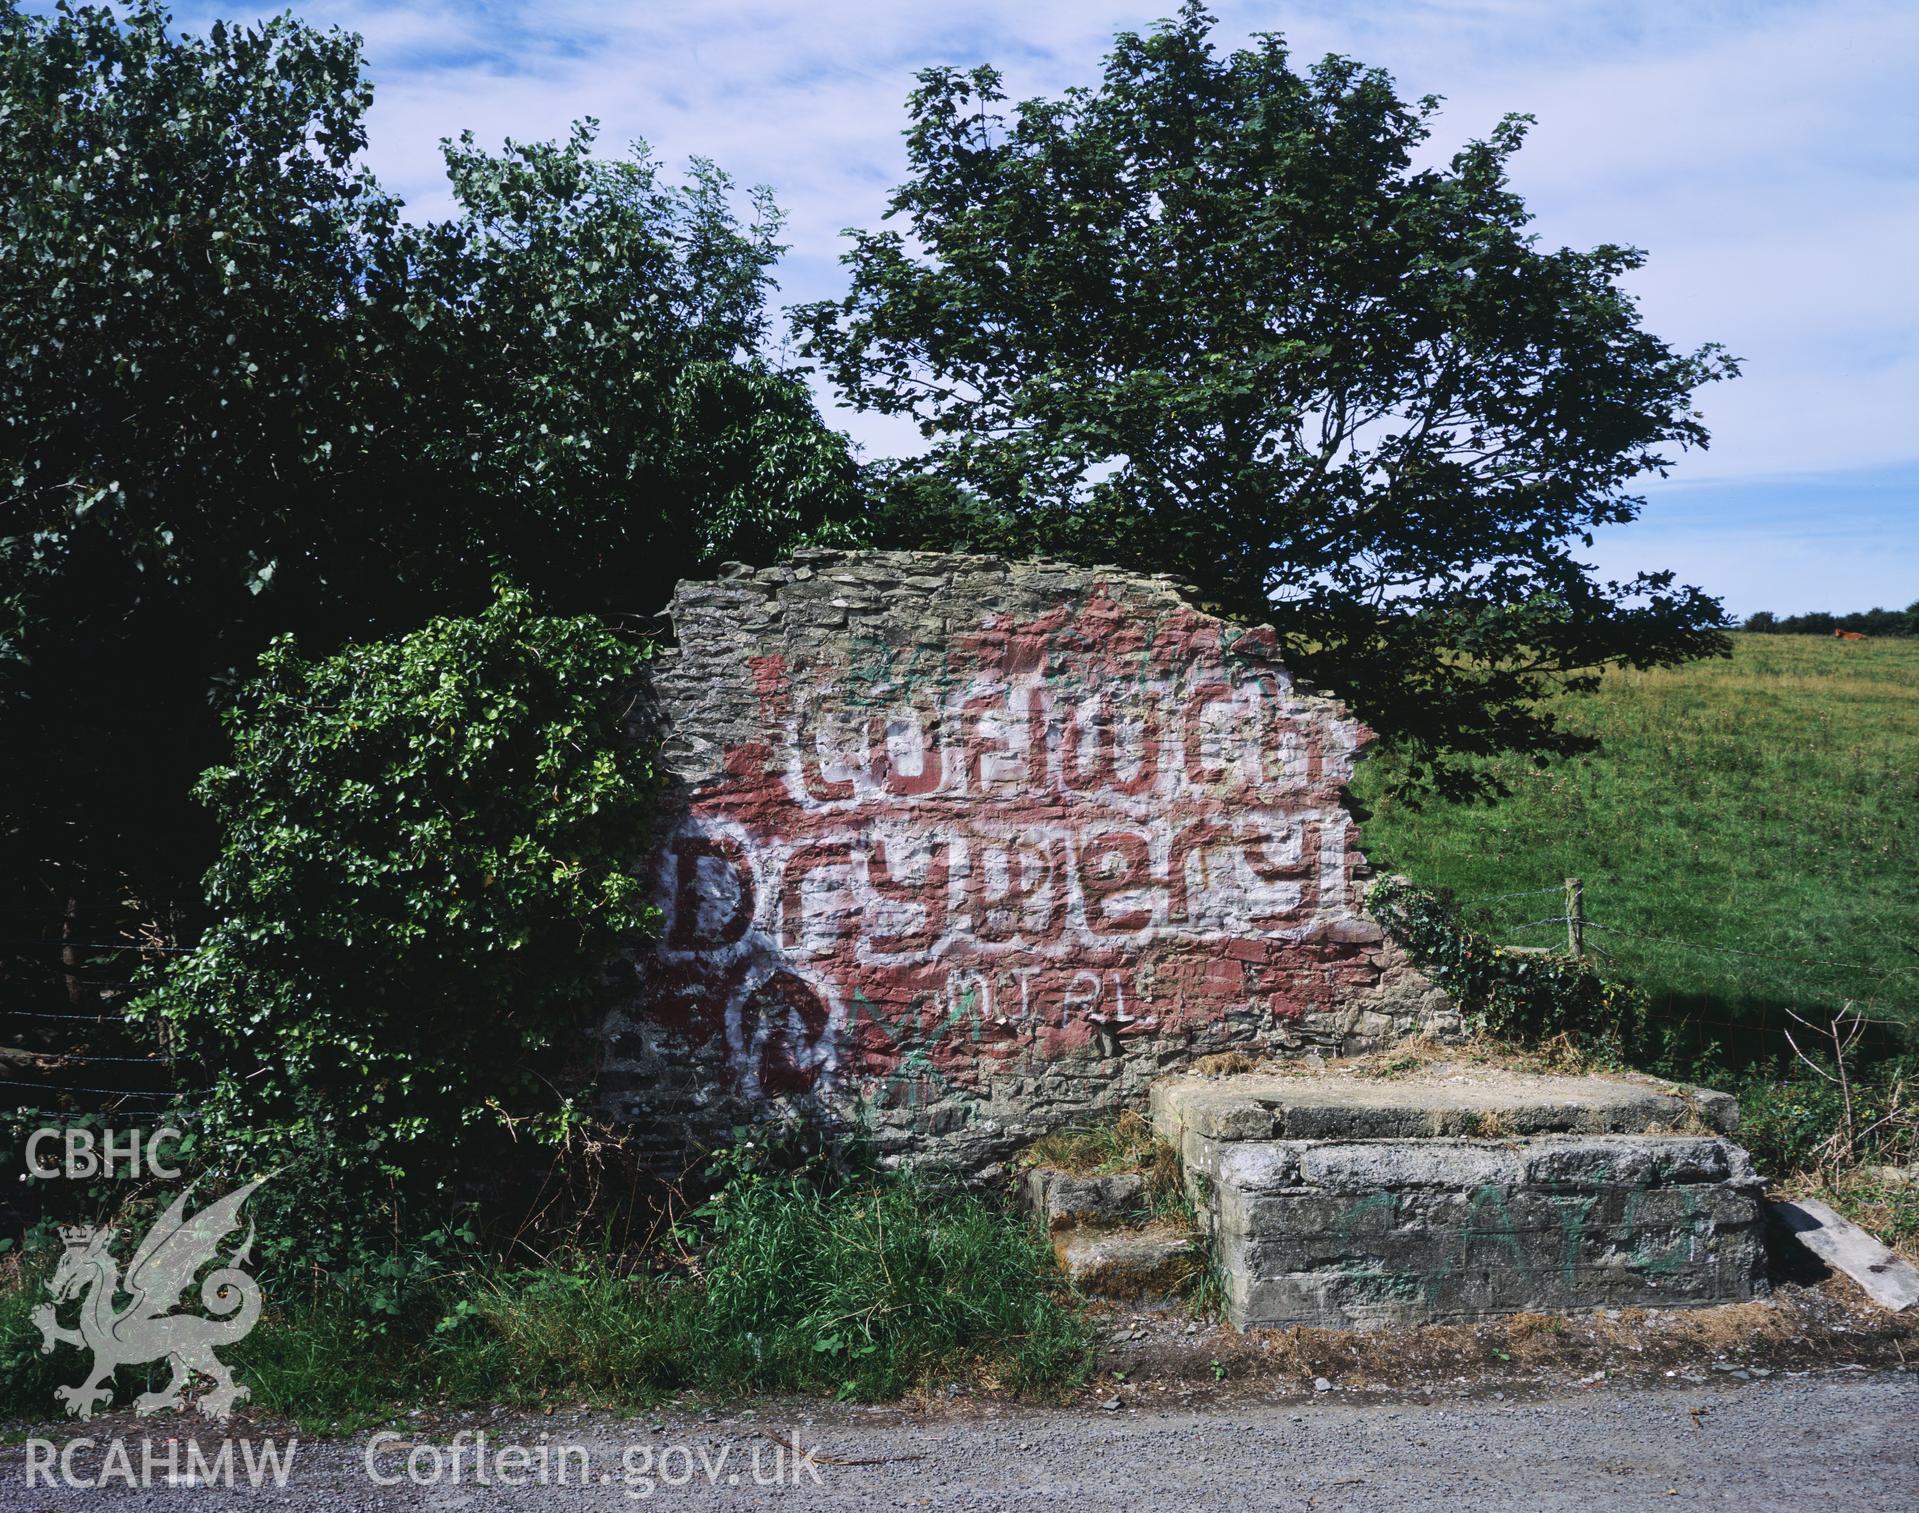 RCAHMW colour transparency showing Cofiwch Dryweryn graffiti at Troed y Rhiw, taken by I.N. Wright, 2002